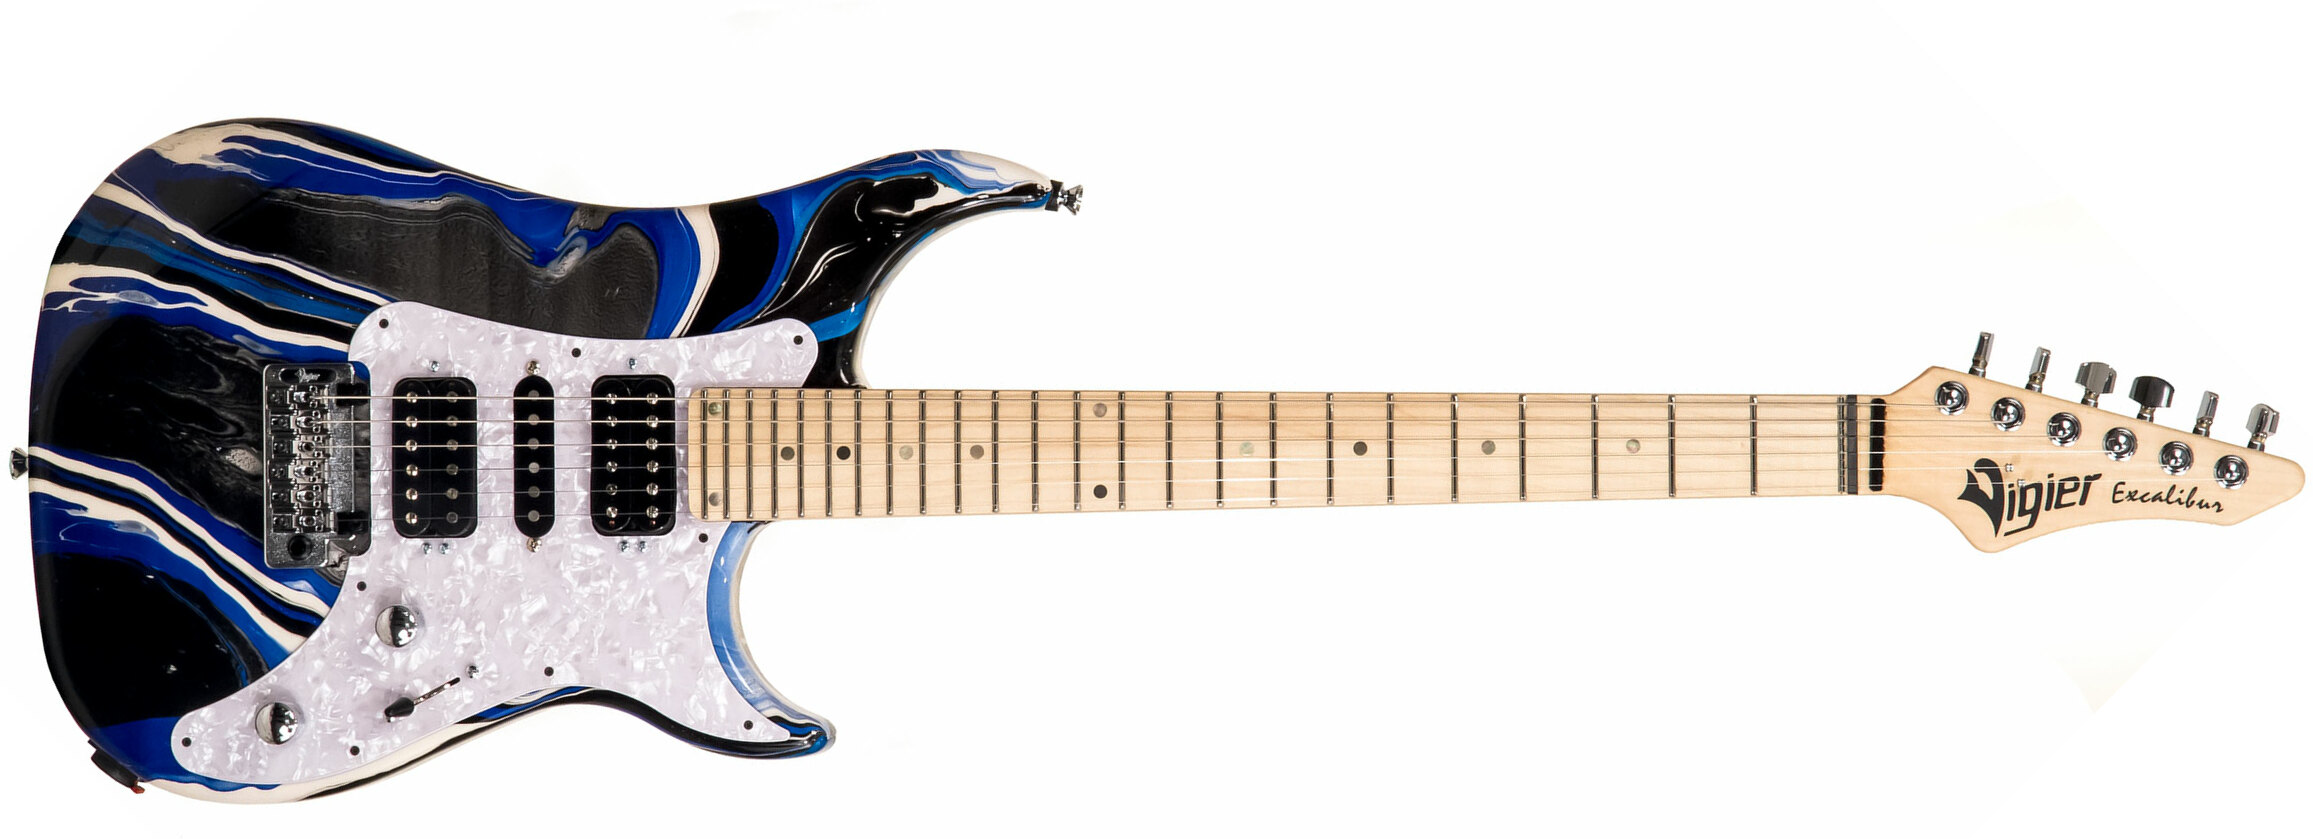 Vigier Excalibur Supraa Hsh Trem Mn - Rock Art Blue White Black - Guitarra eléctrica de doble corte - Main picture